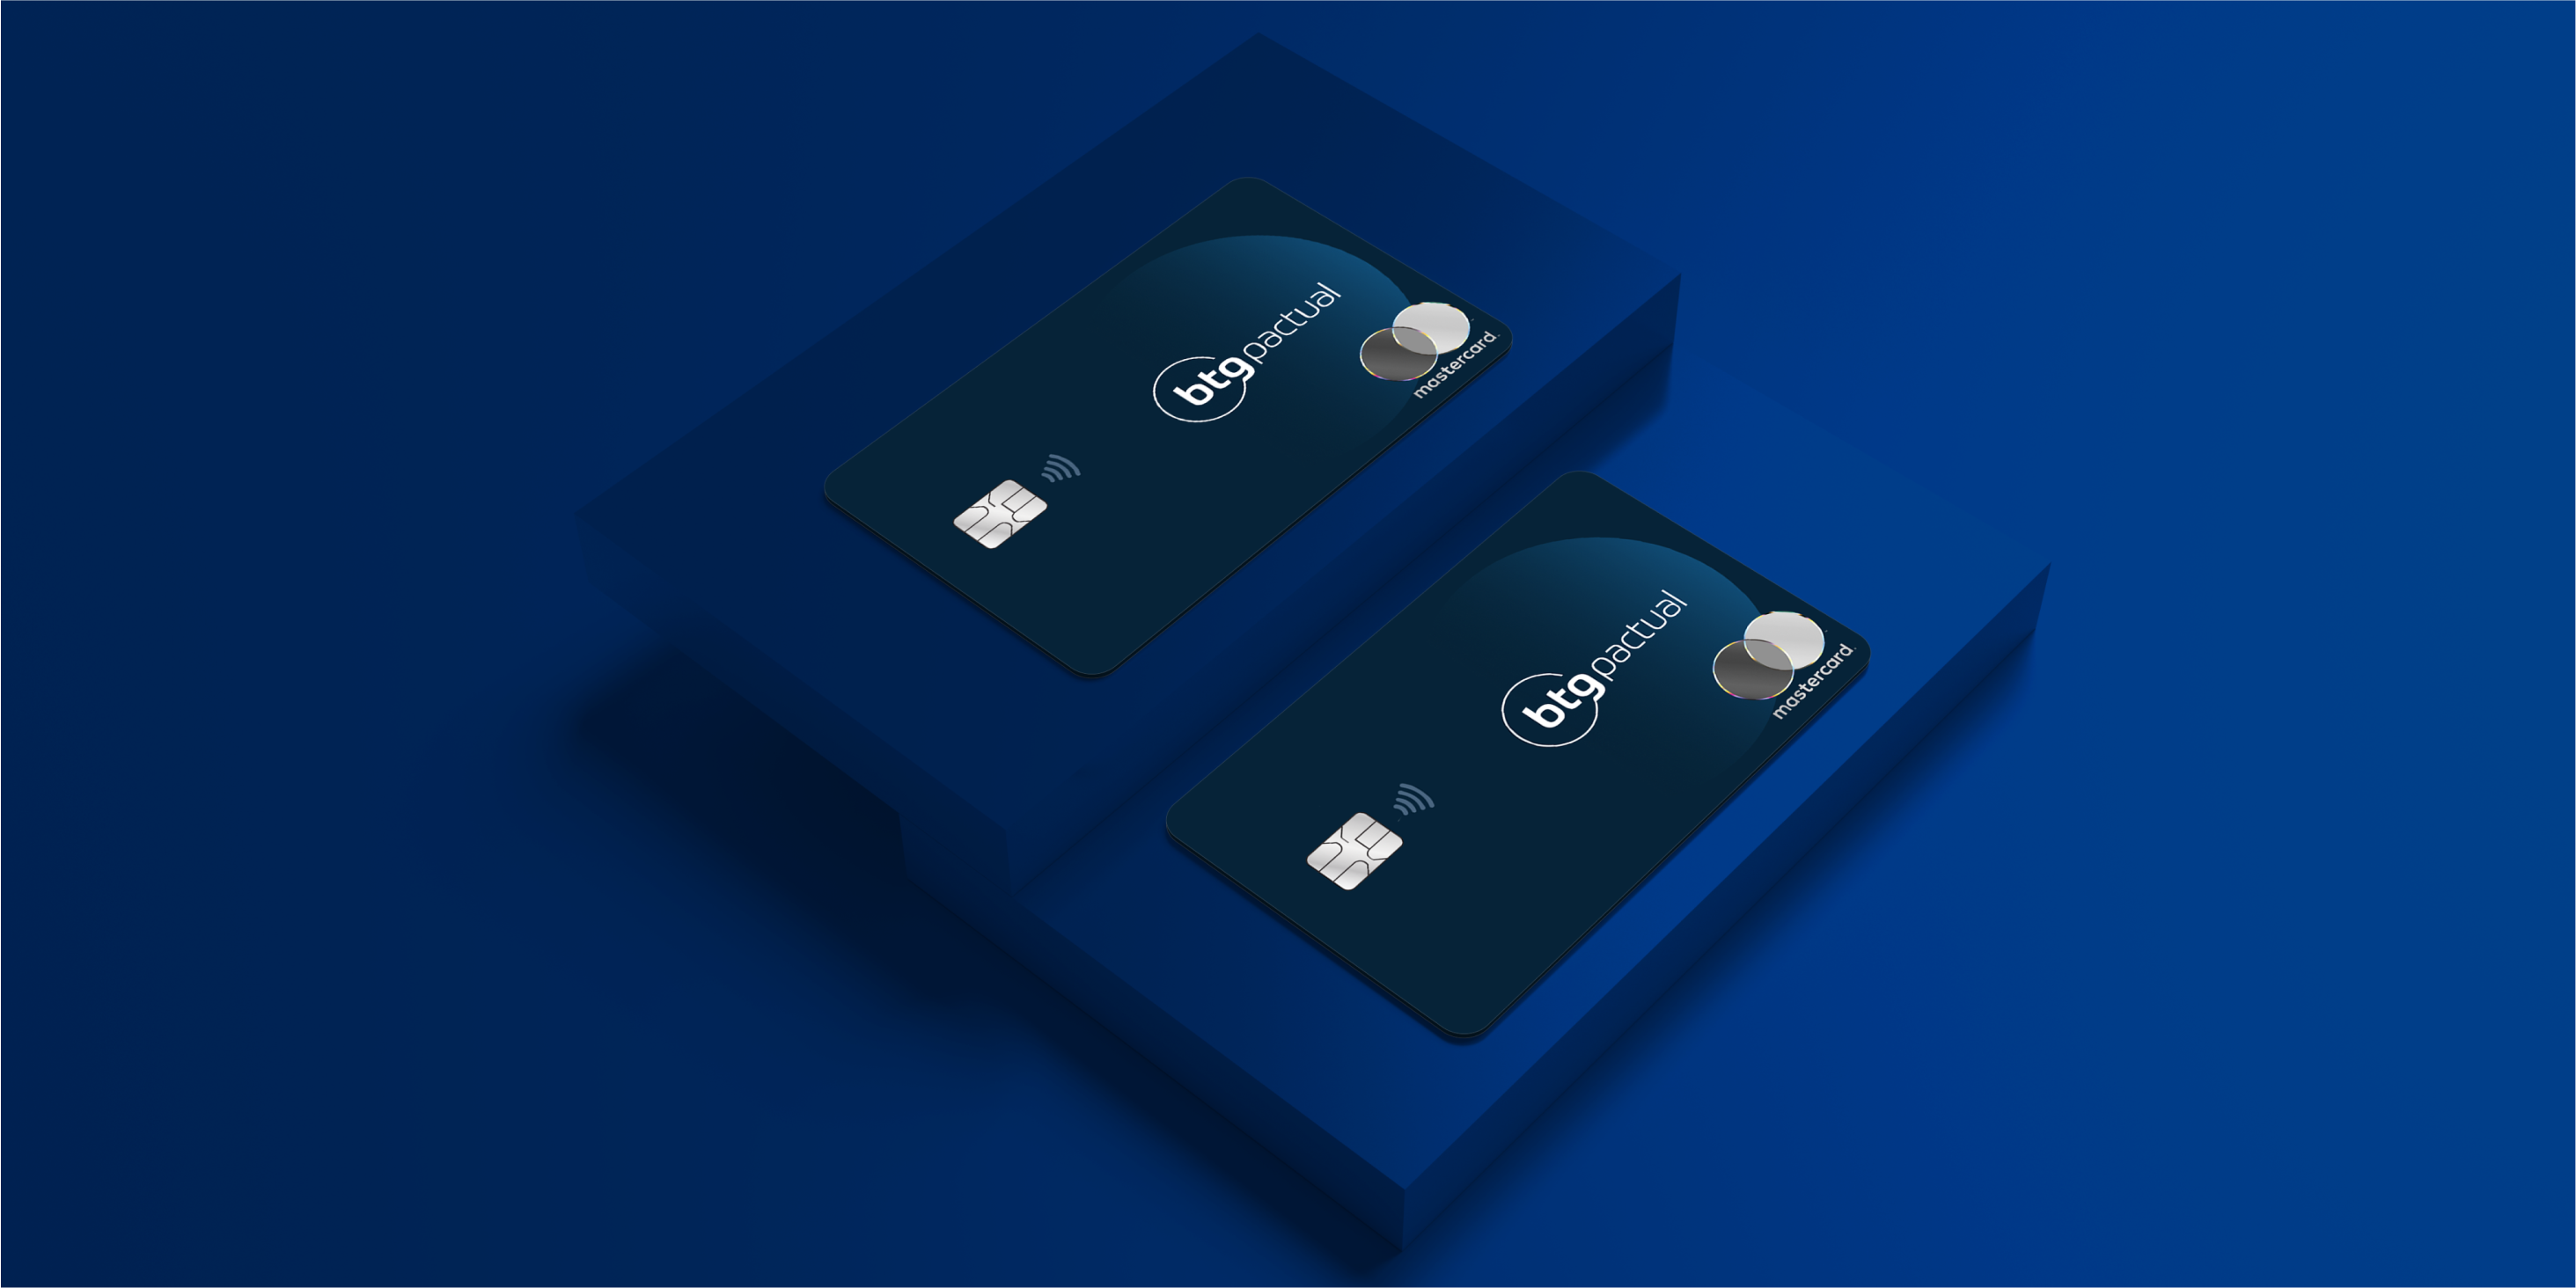 BTG Pactual lança novos benefícios nos cartões Black e Platinum com módulos adaptáveis a cada perfil